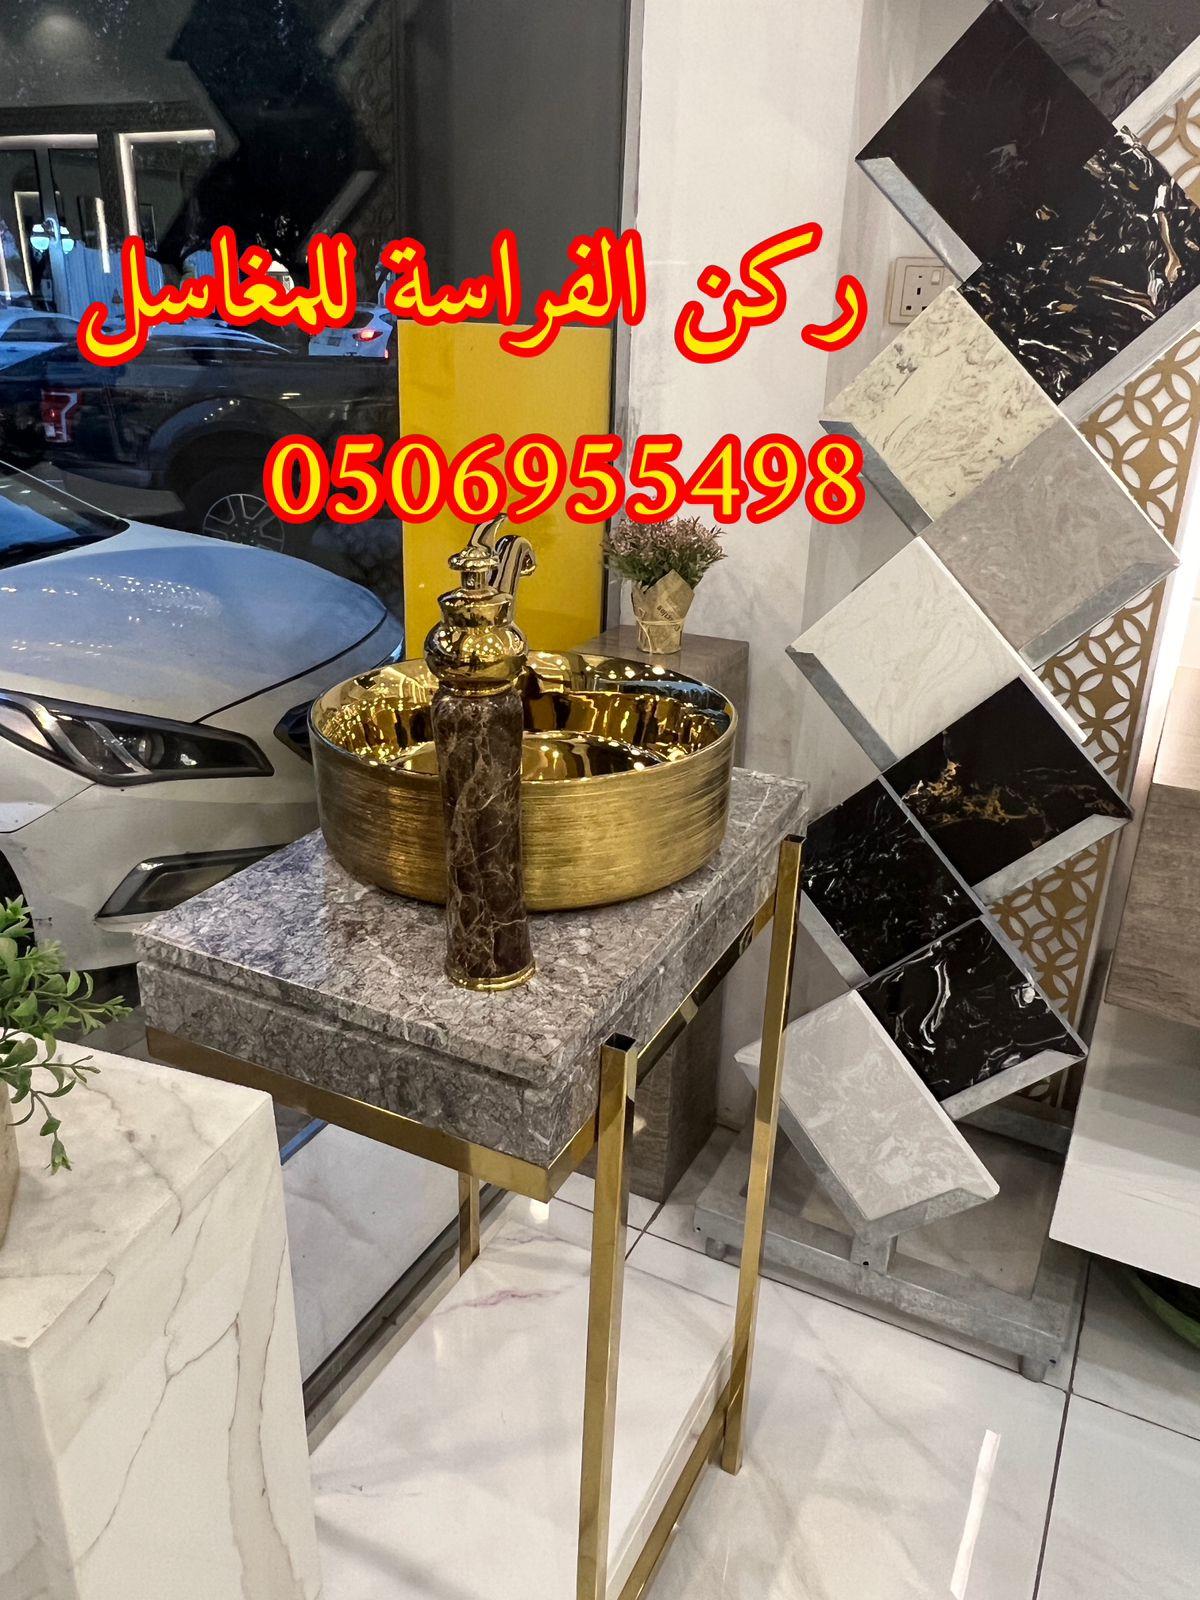 الرياض - ديكورات مغاسل حمامات رخام في الرياض,0506955498 638373669